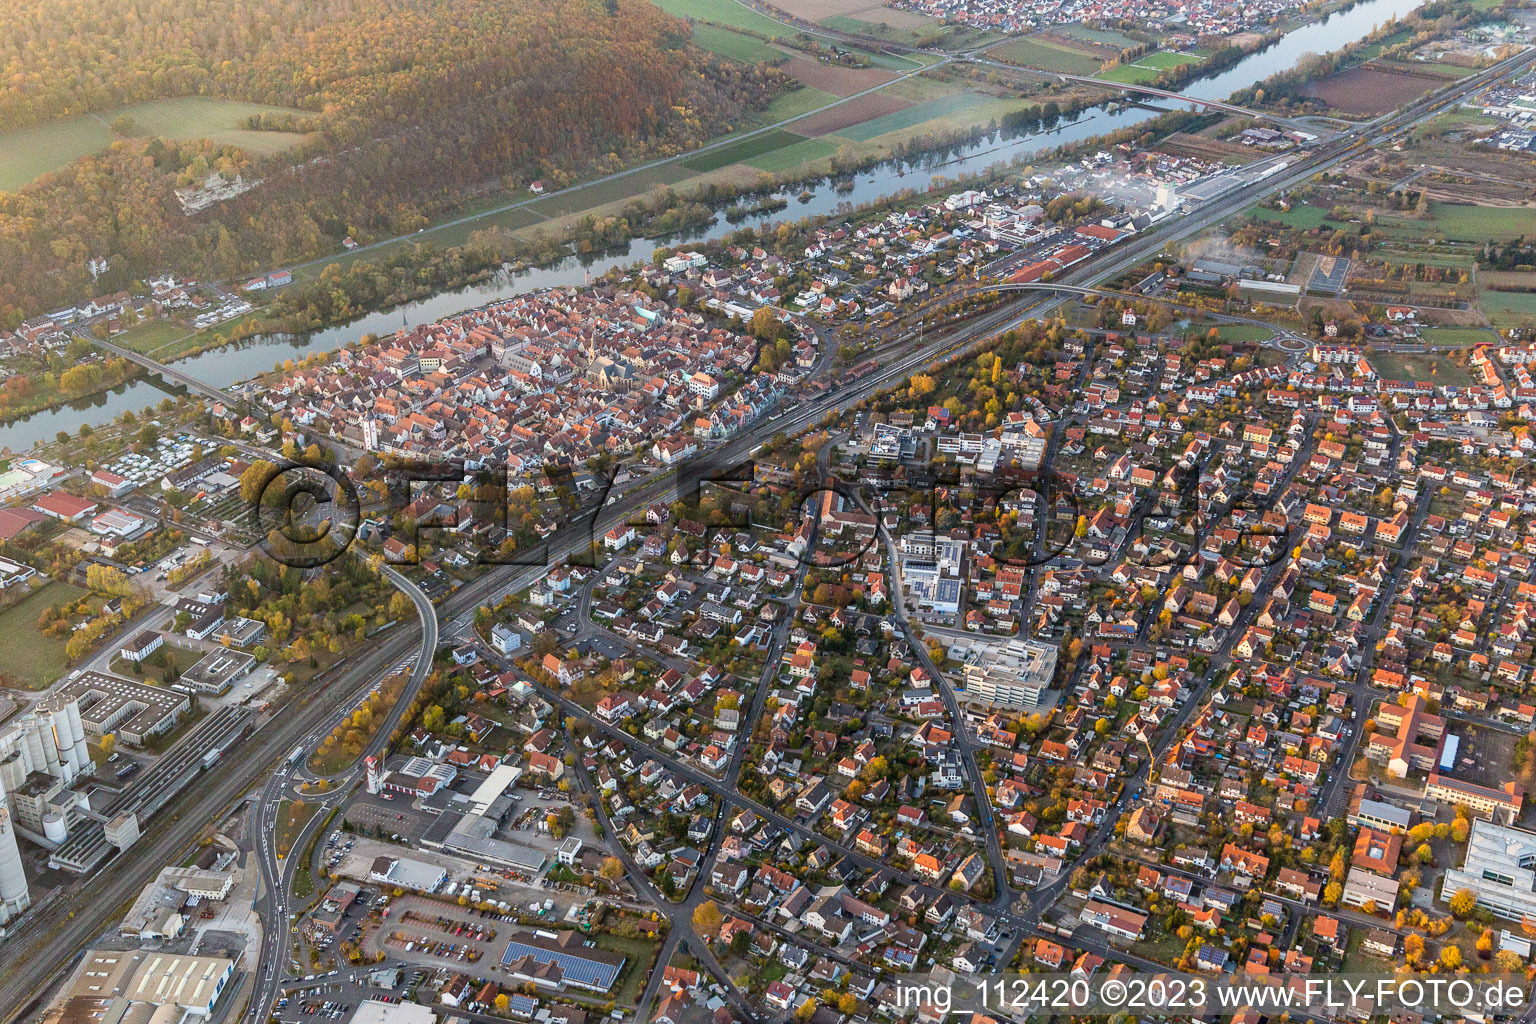 Luftbild von Karlstadt am Main im Bundesland Bayern, Deutschland